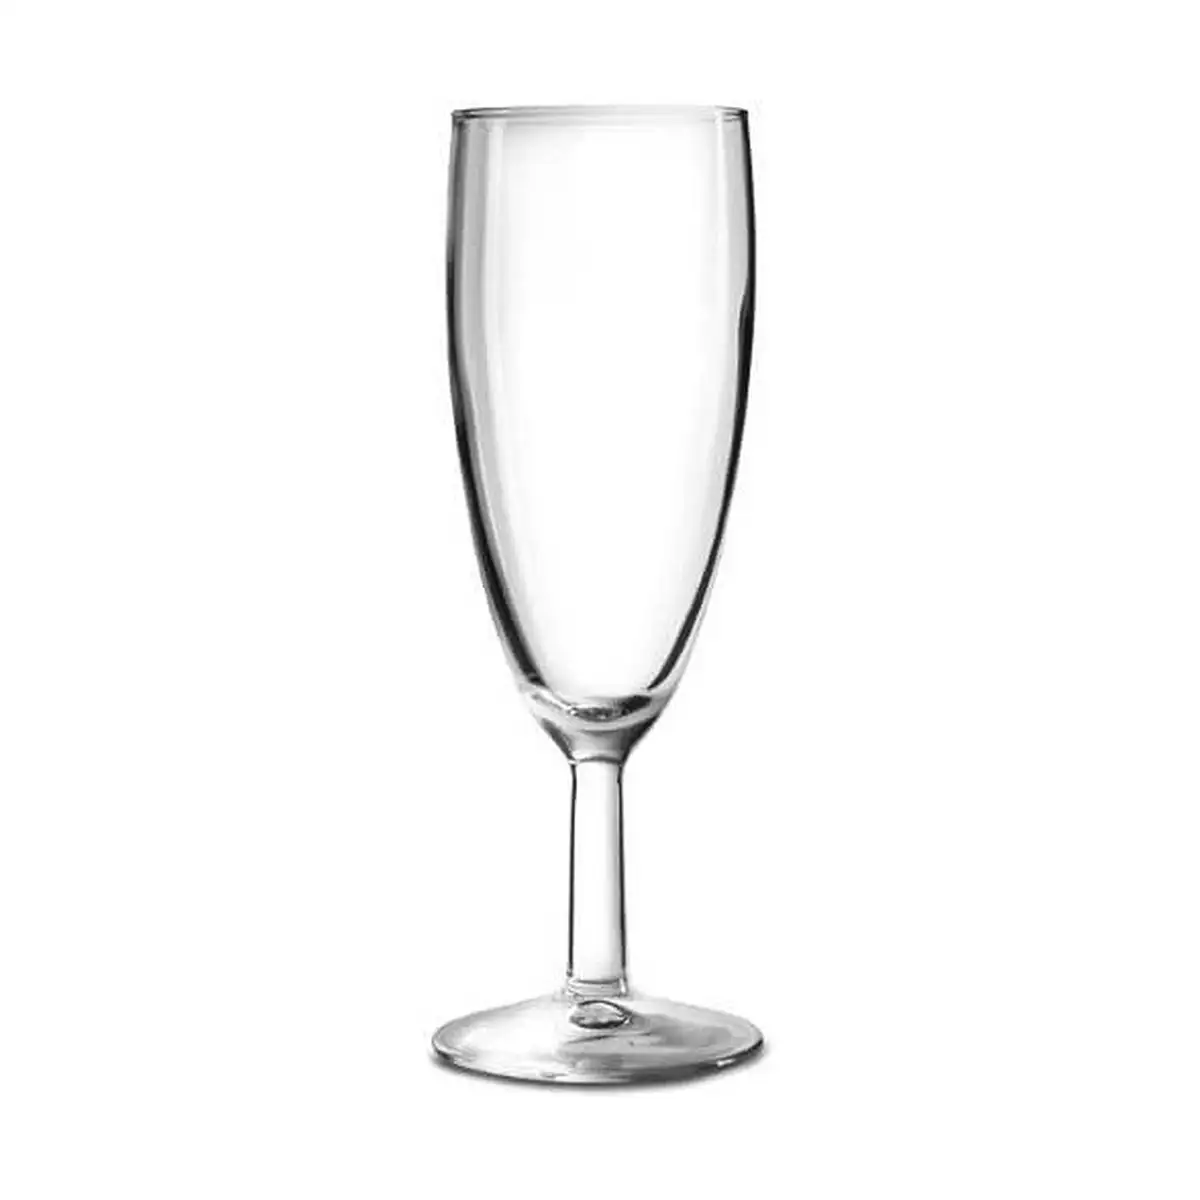 Coupe de champagne arcoroc transparent verre 12 unites 17 cl _2586. DIAYTAR SENEGAL - Votre Destination pour un Shopping Réfléchi. Découvrez notre gamme variée et choisissez des produits qui correspondent à vos valeurs et à votre style de vie.